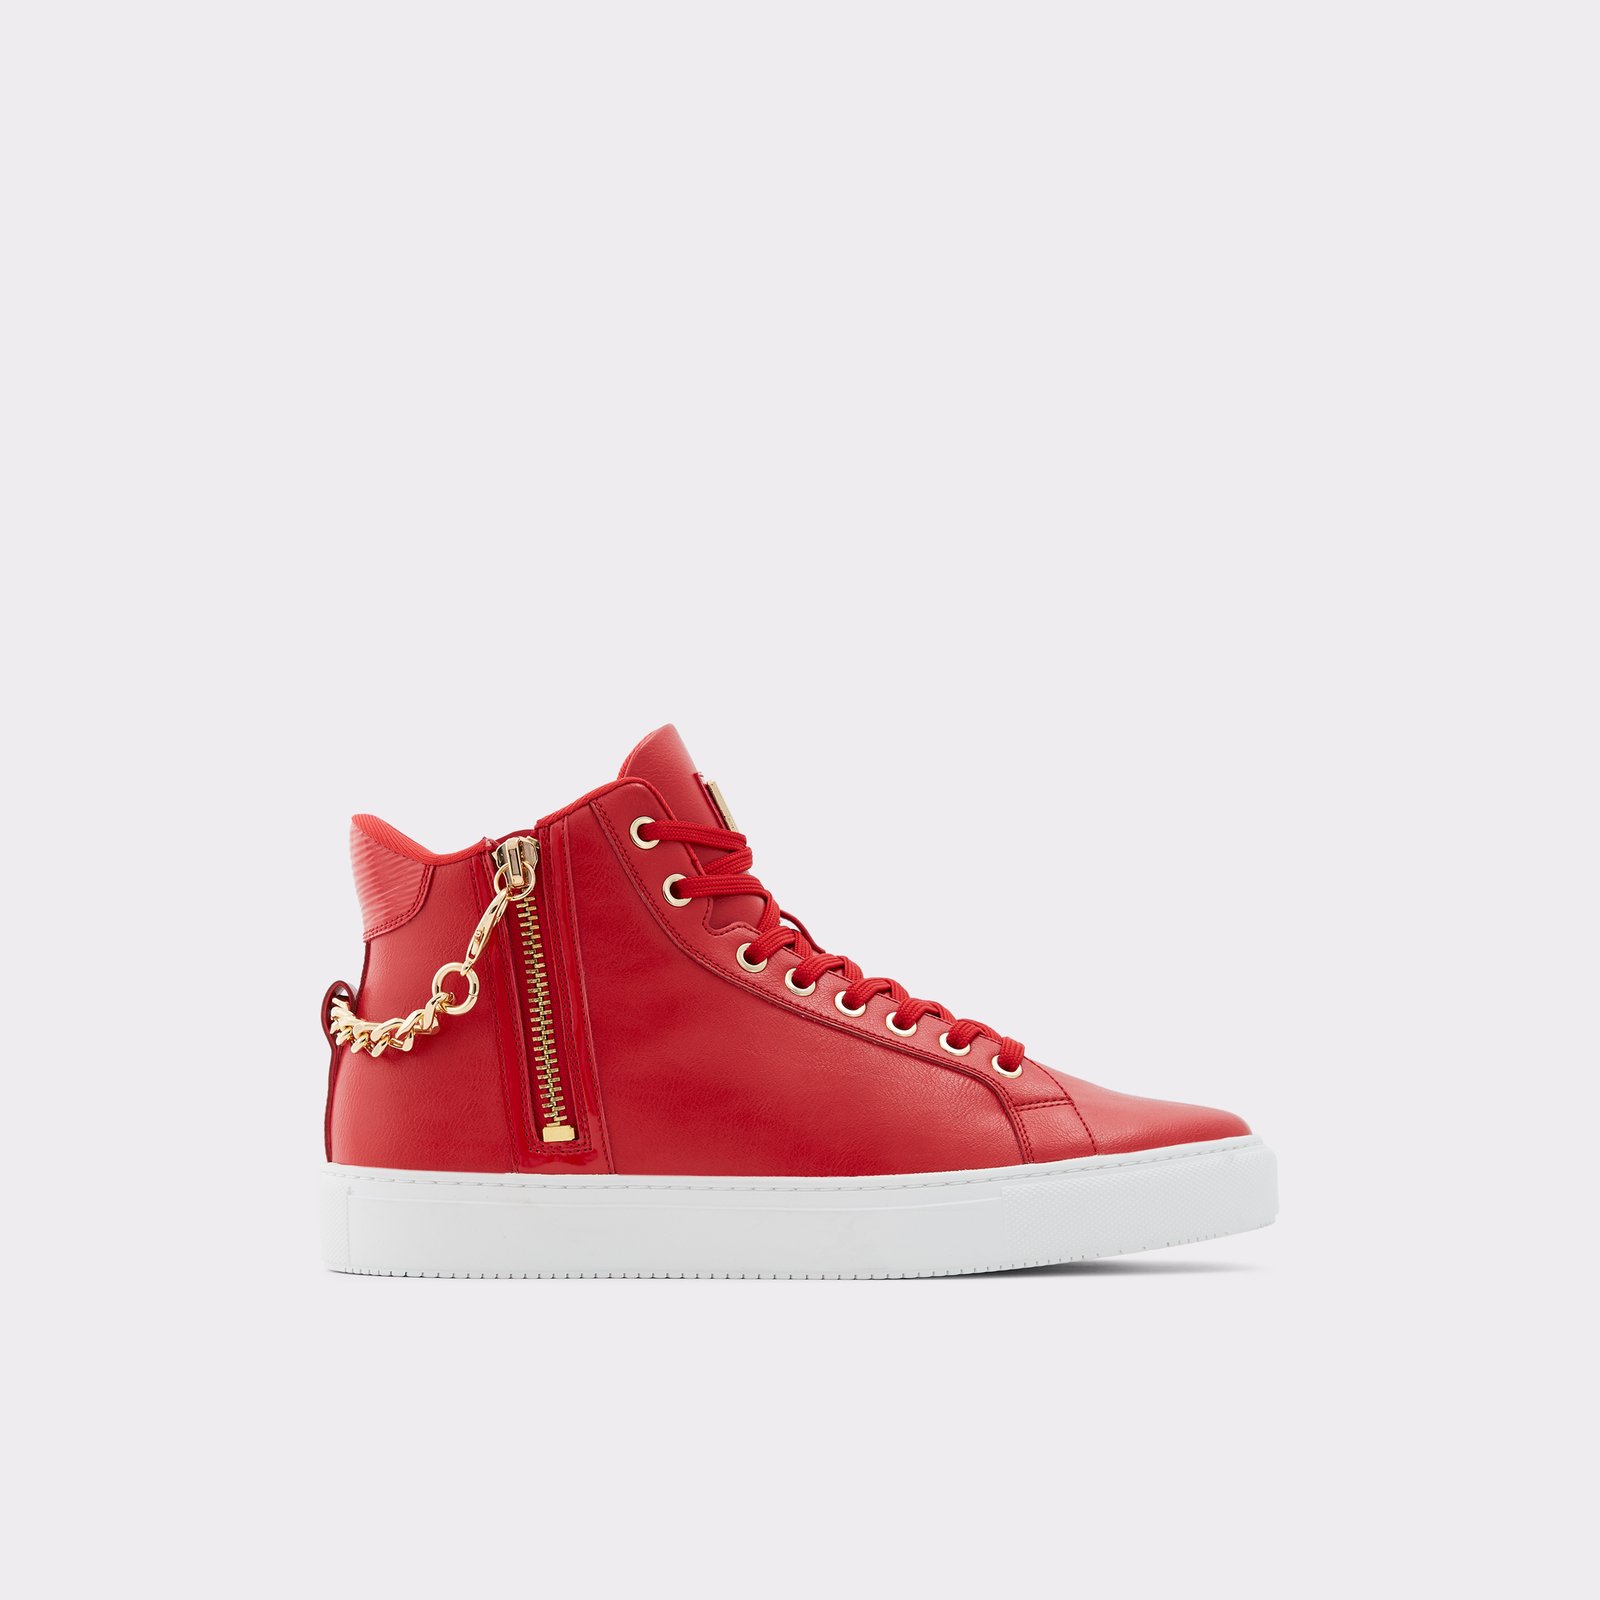 Varves Red Men's Sneakers | ALDO US